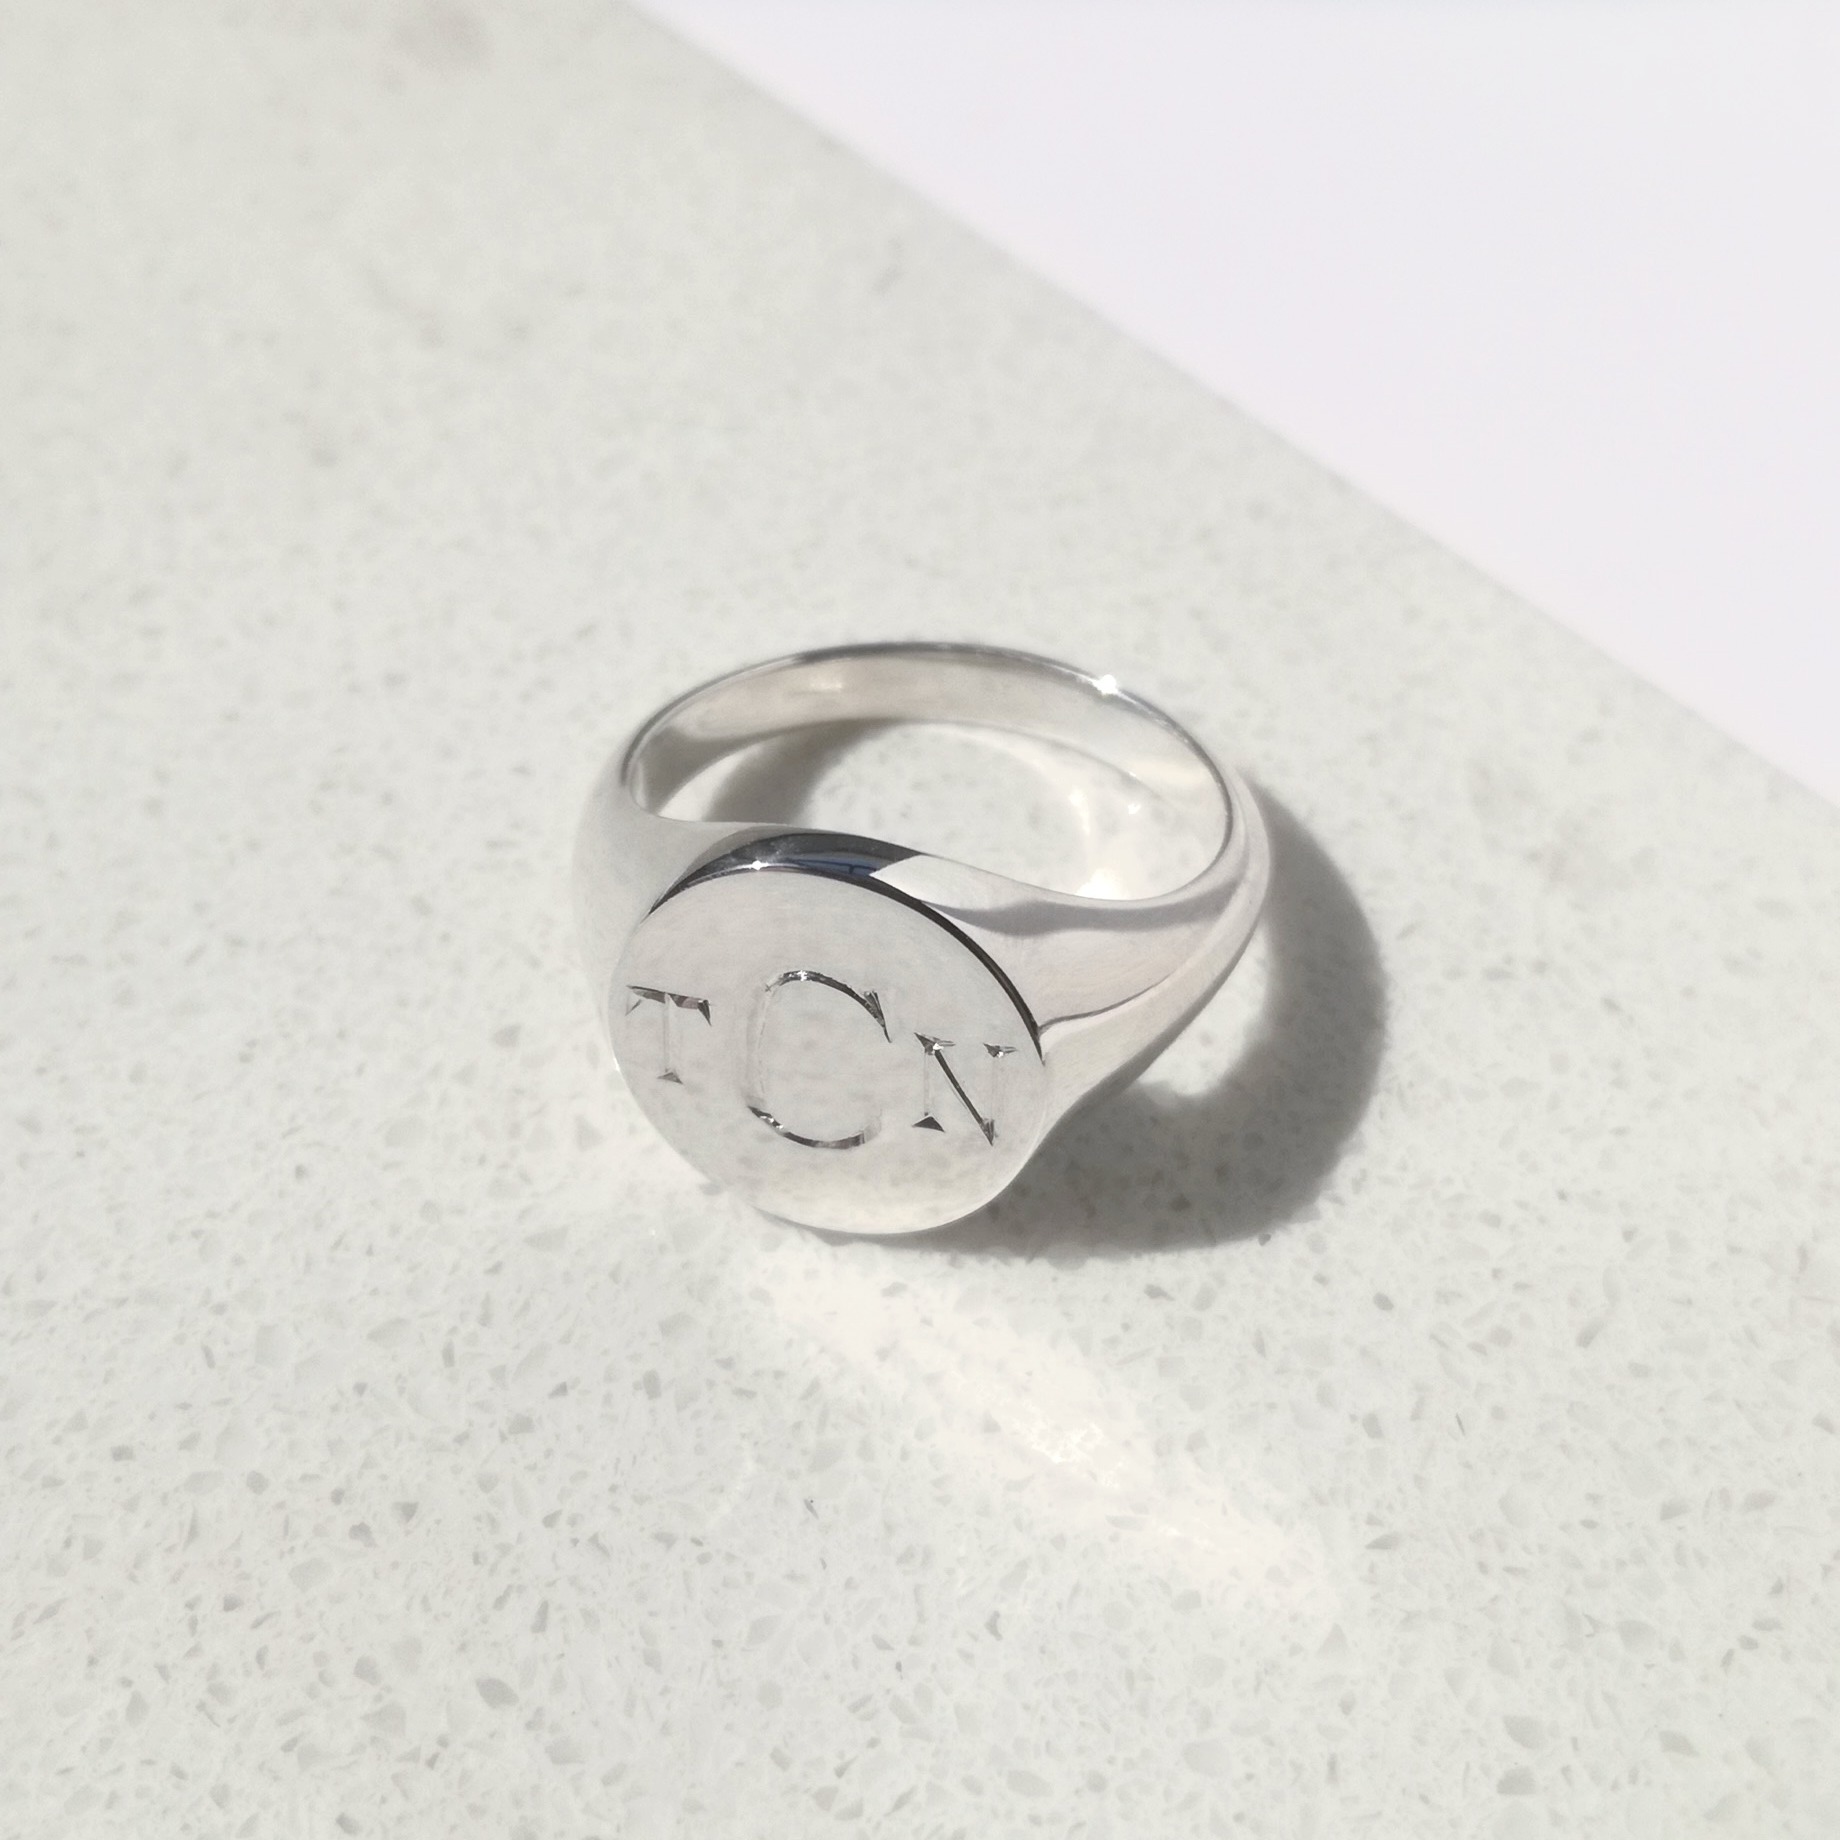 Round Engraved Initial Signet Ring, men's ring, men's jewellery, signet ring, silver ring, initial ring, engraved signet ring, Danielle Camera Jewellery